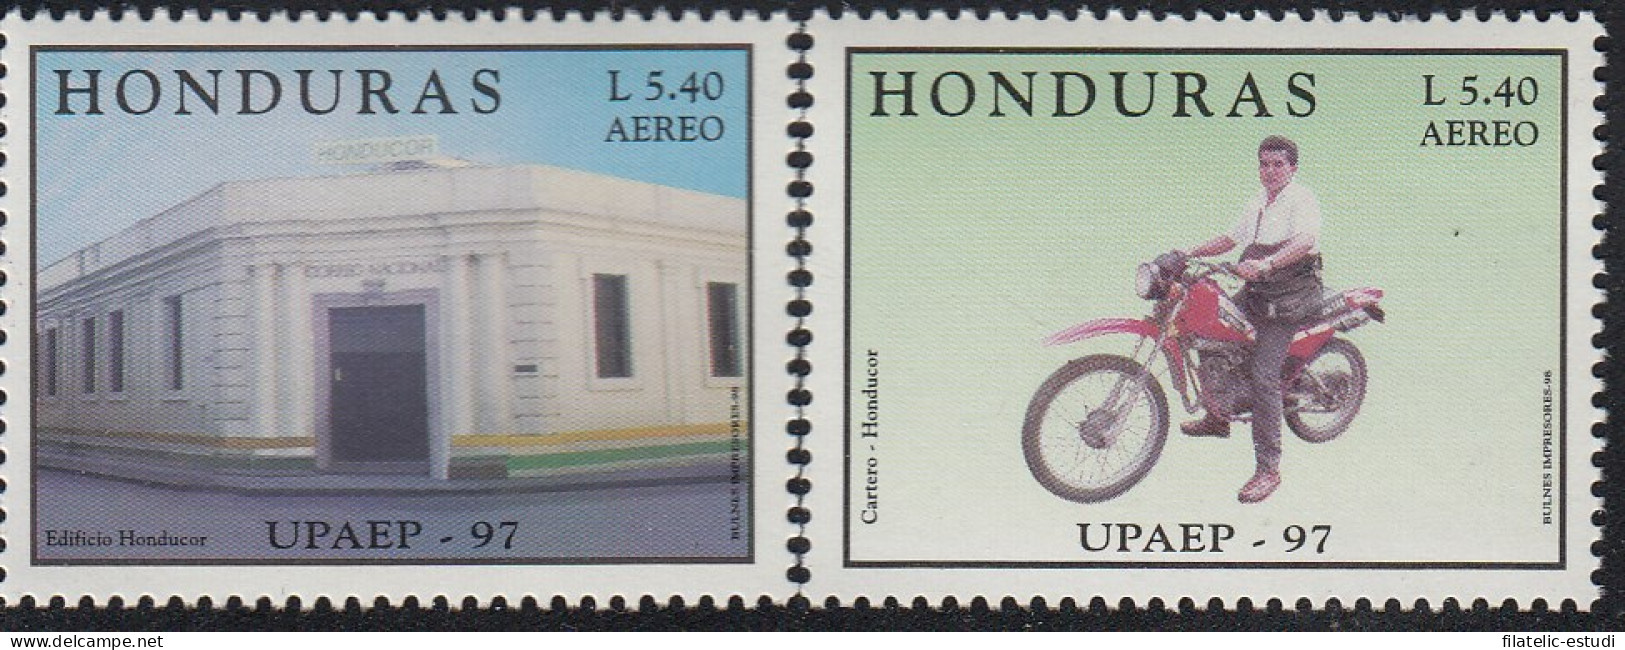 Upaep Honduras 959/60 1997 Cartero En Motocicleta Oficina De Correos MNH - Altri - America